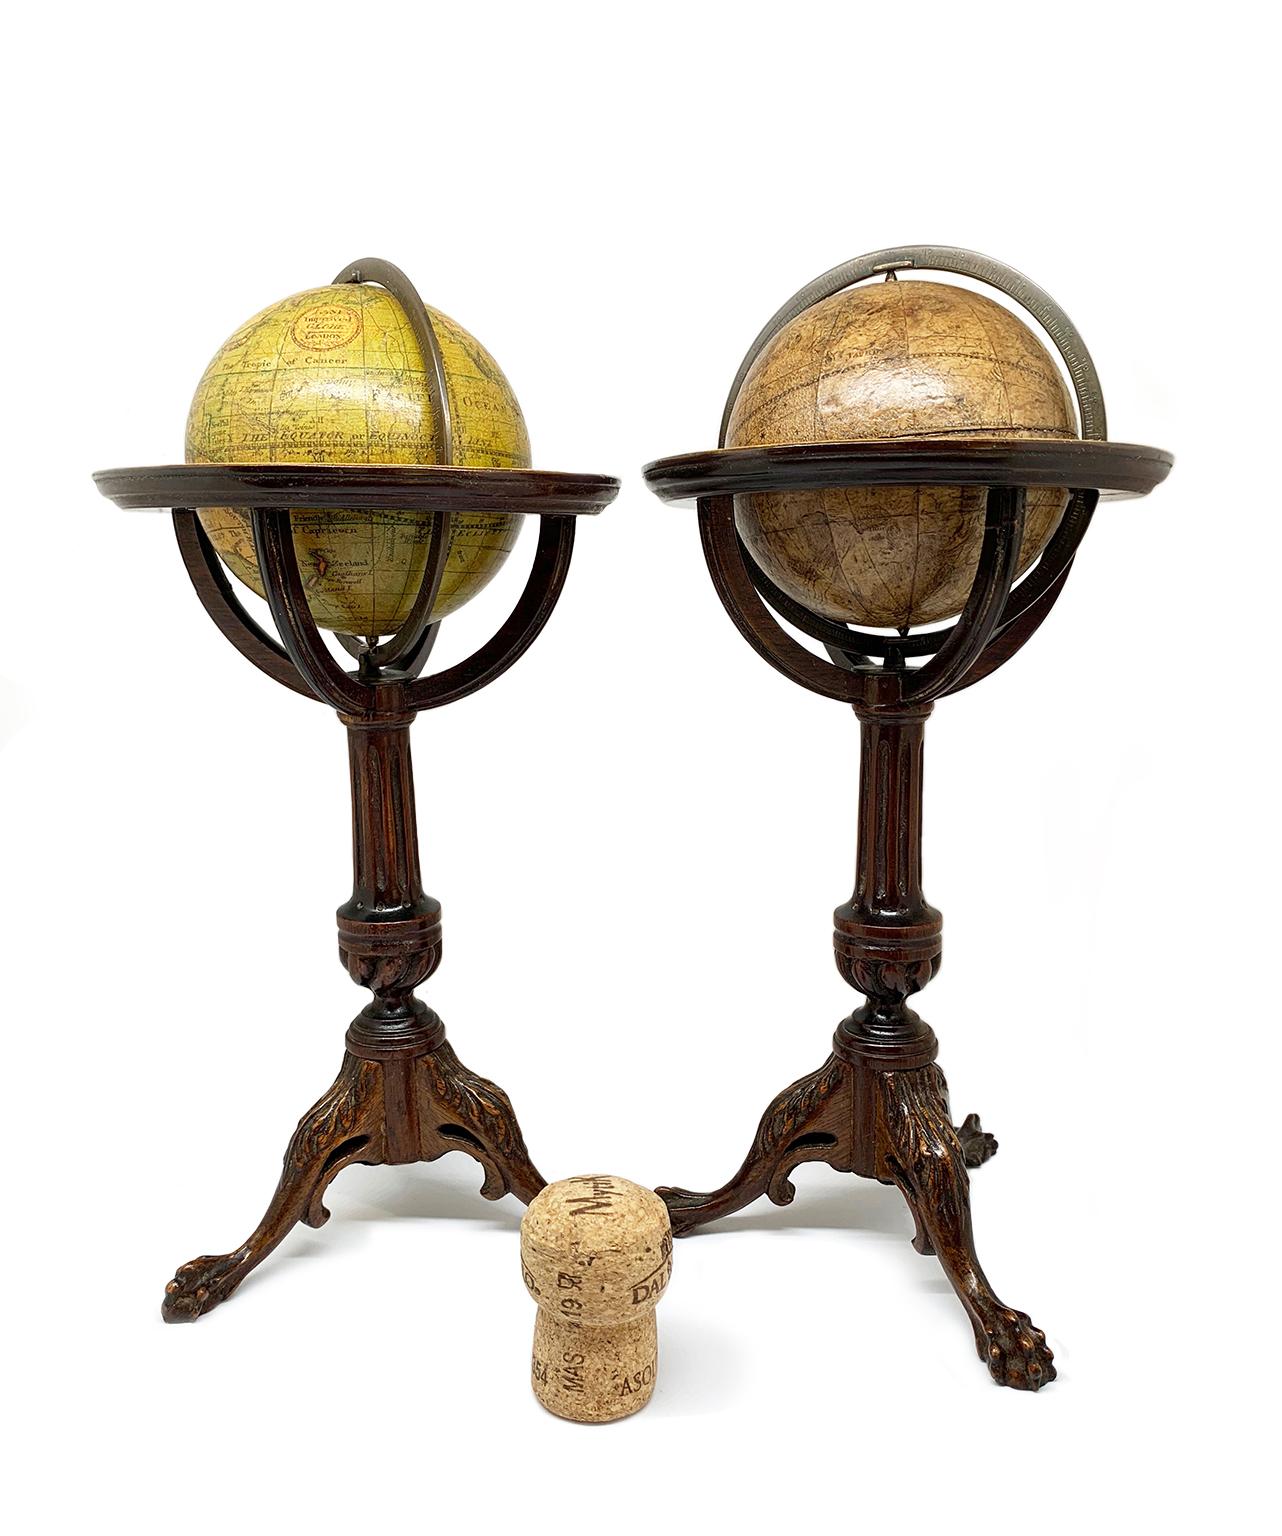 Paire de globes miniatures
Lane's, Londres, post 1833, ante 1858
Papier mâché, bois et papier

Ils mesurent :
Hauteur 9,44 in (24 cm) ;
Diamètre de la sphère : 7 cm ;
Diamètre de la base en bois : 10,6 cm.
Poids 0,73 lb (335 g)

État de